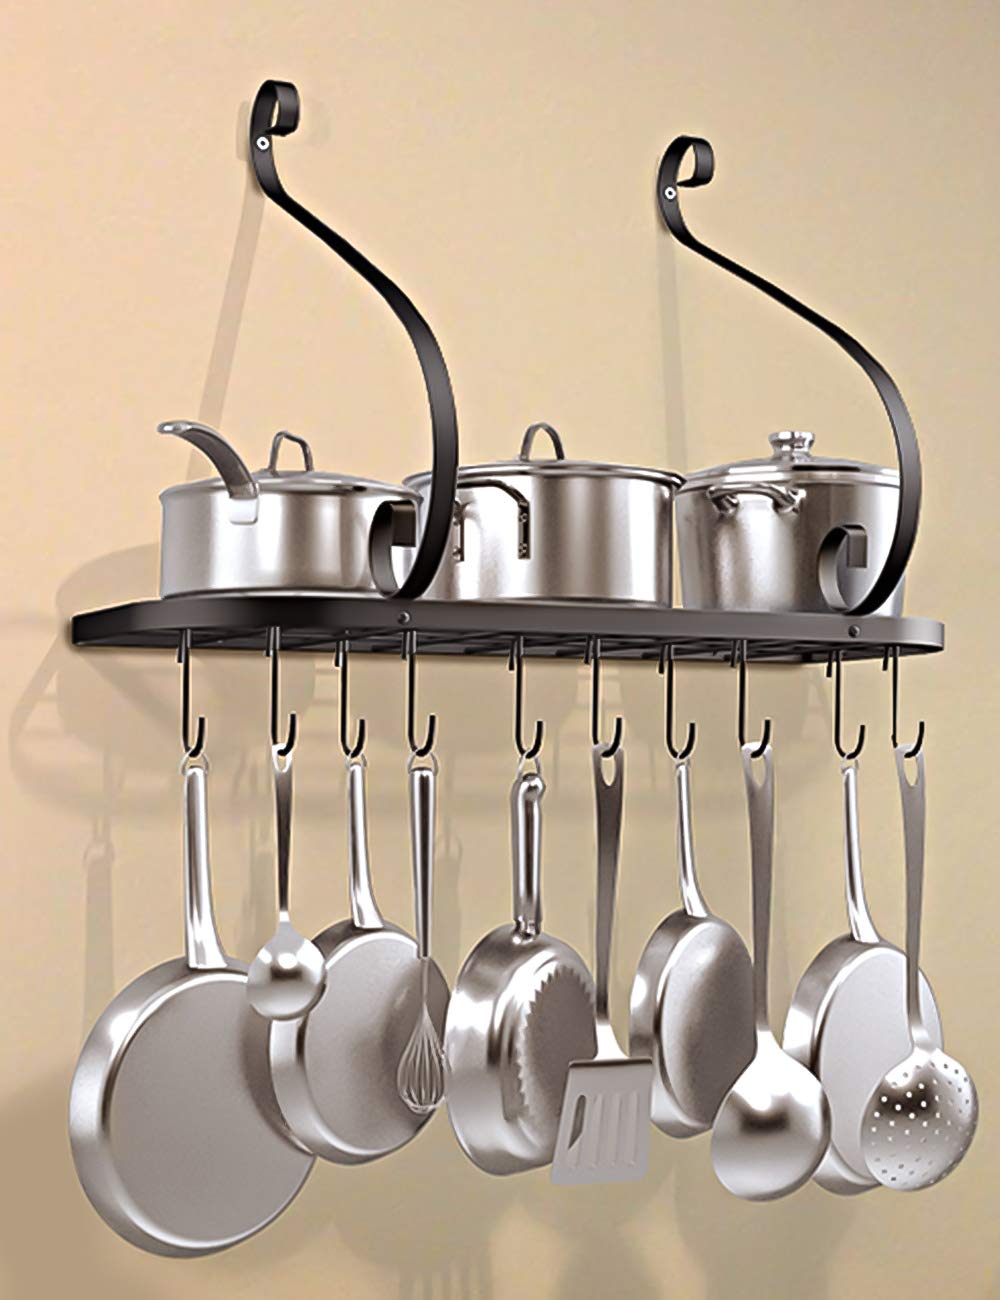 VDOMUS Kitchen Pot Pan Rack Shelf Wall Mounted Utensil Holder Hanger Bar with 10 Hooks, 24